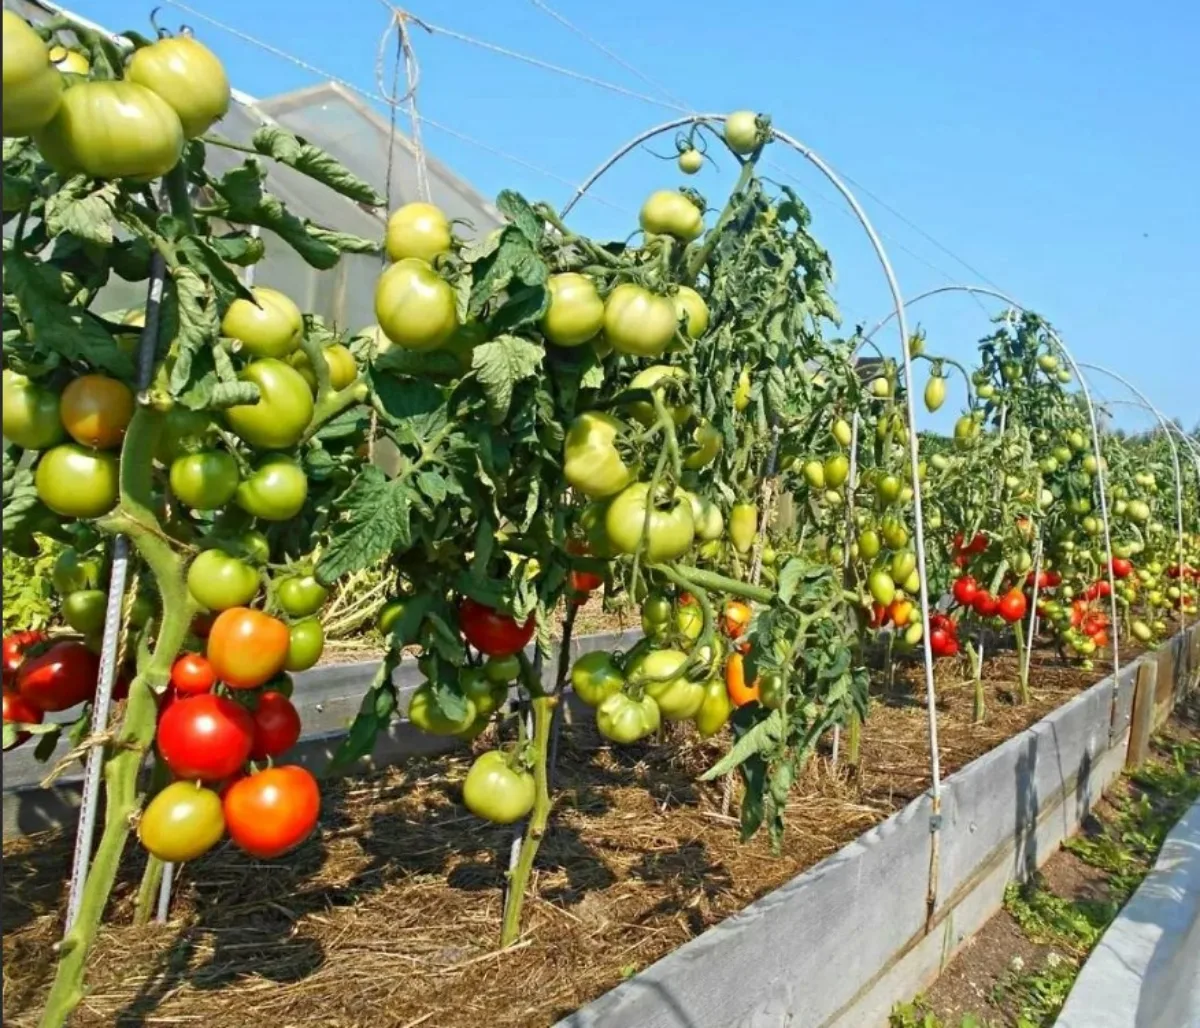 comment bien tuteurer les plants de tomates